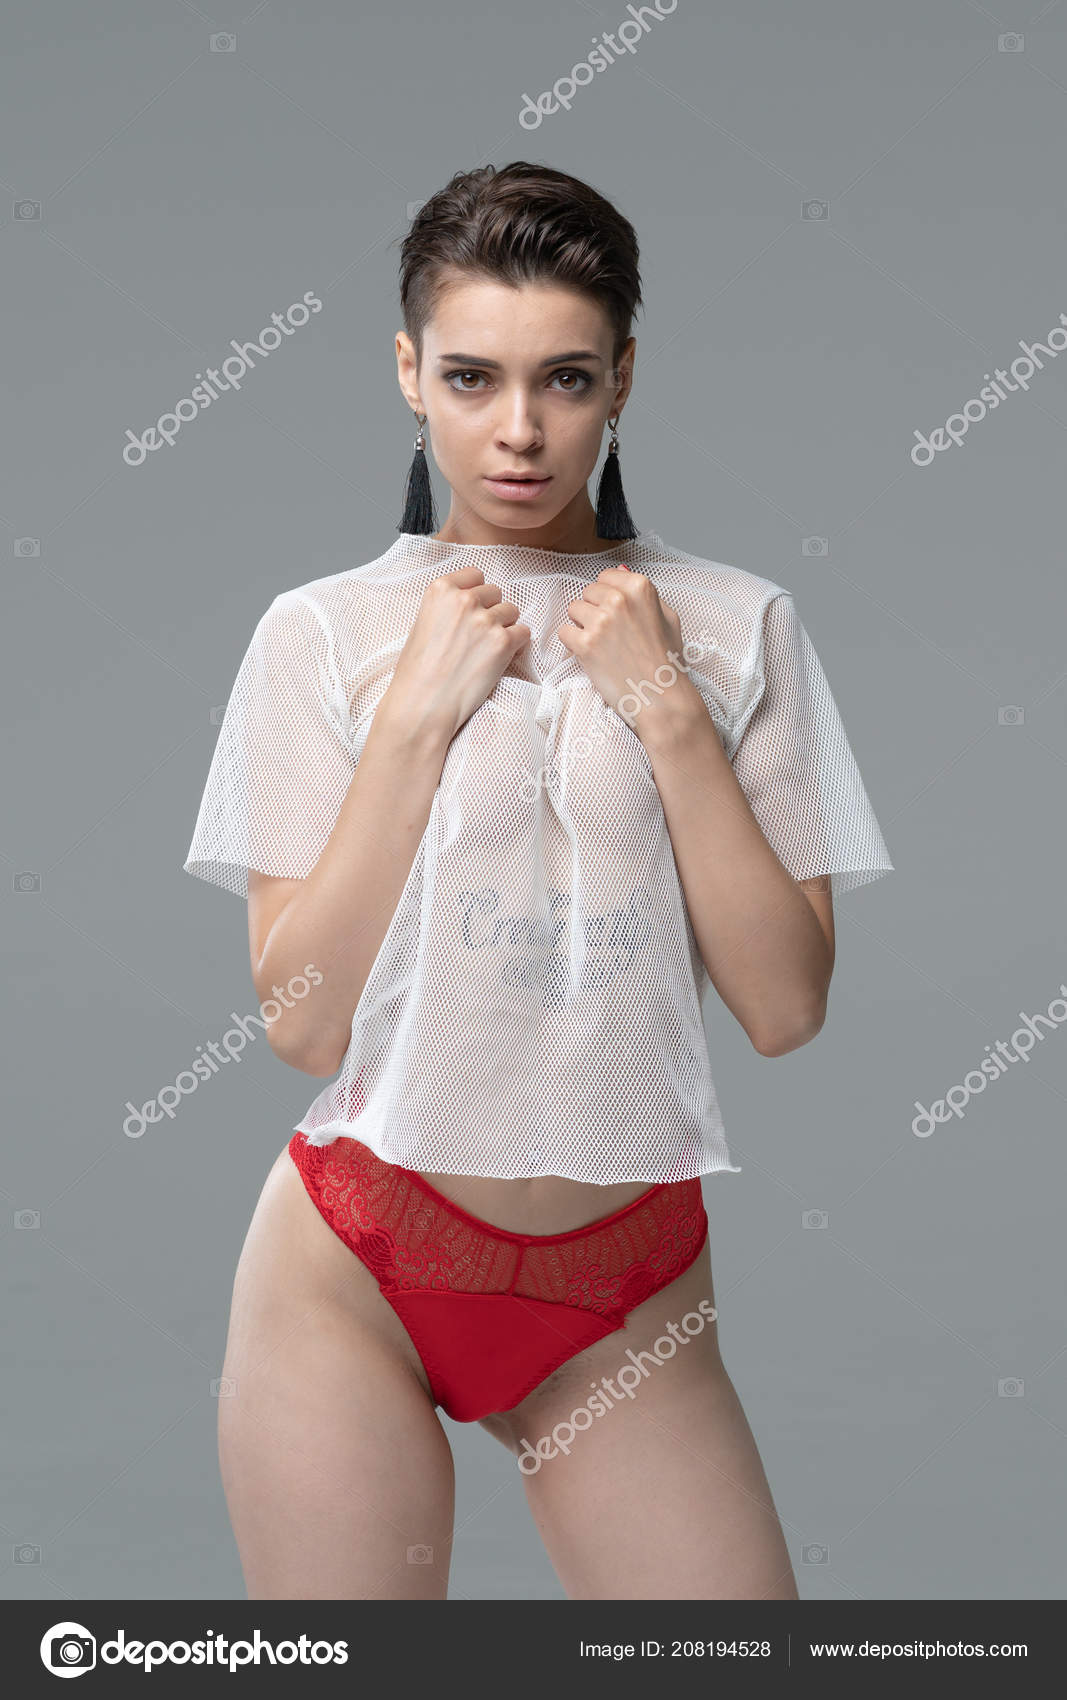 https://st4.depositphotos.com/10086424/20819/i/1600/depositphotos_208194528-stock-photo-young-beautiful-girl-posing-studio.jpg